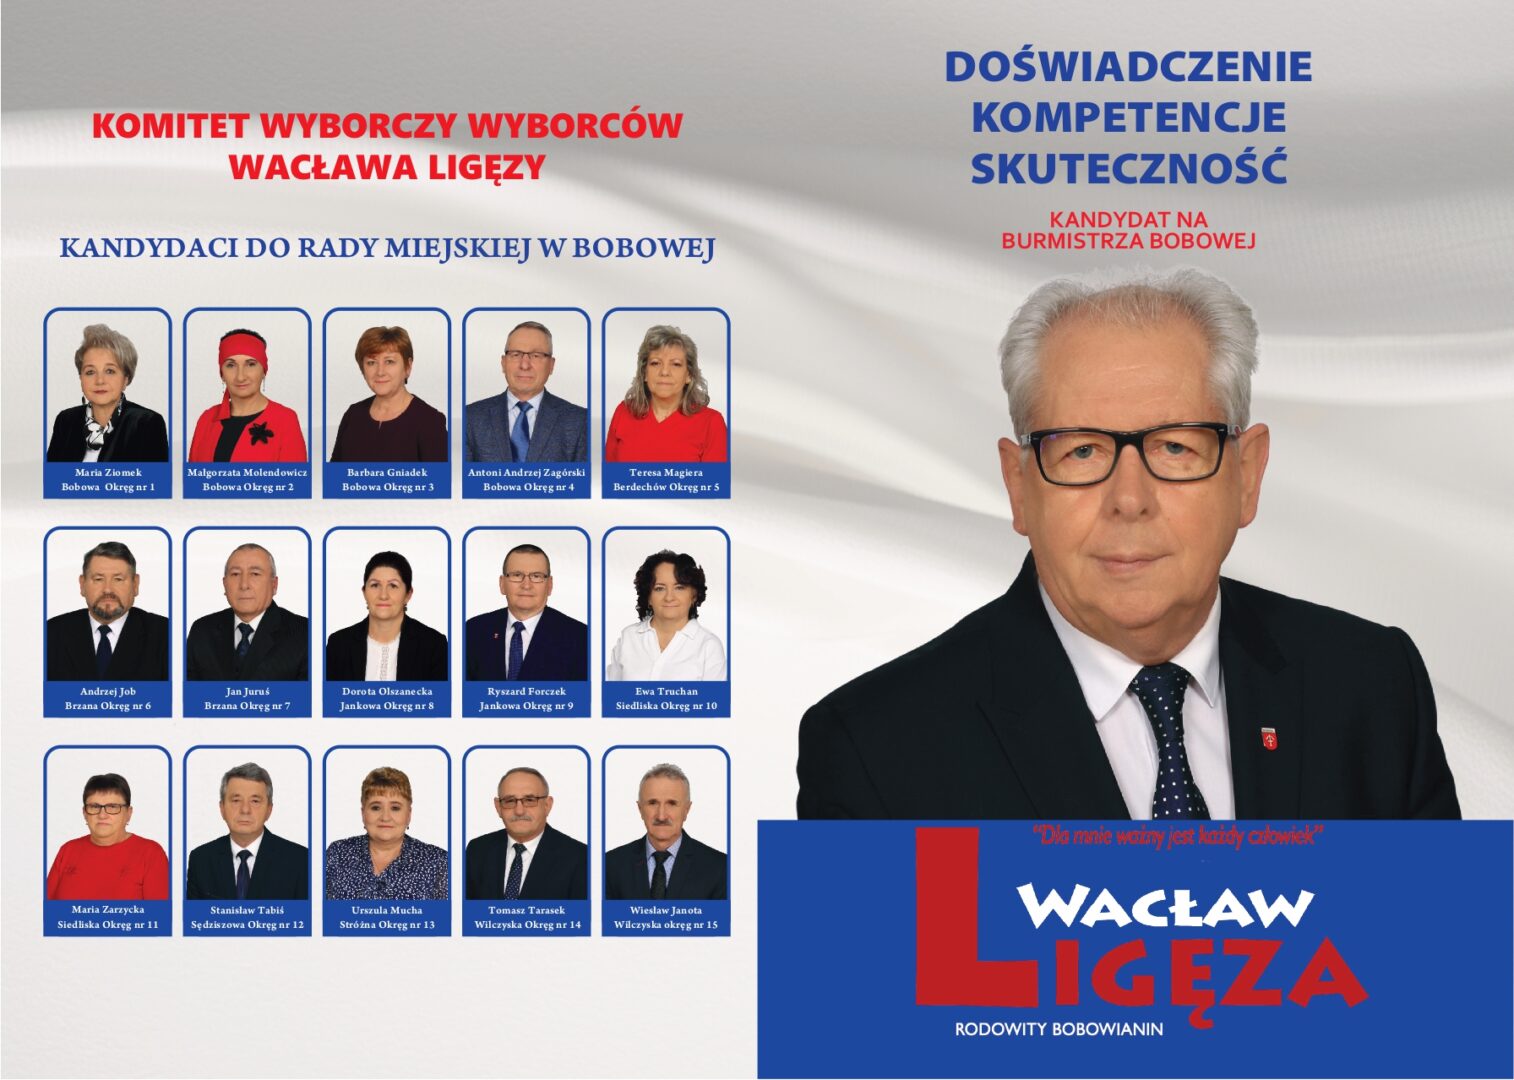 KWW Wacława Ligęzy